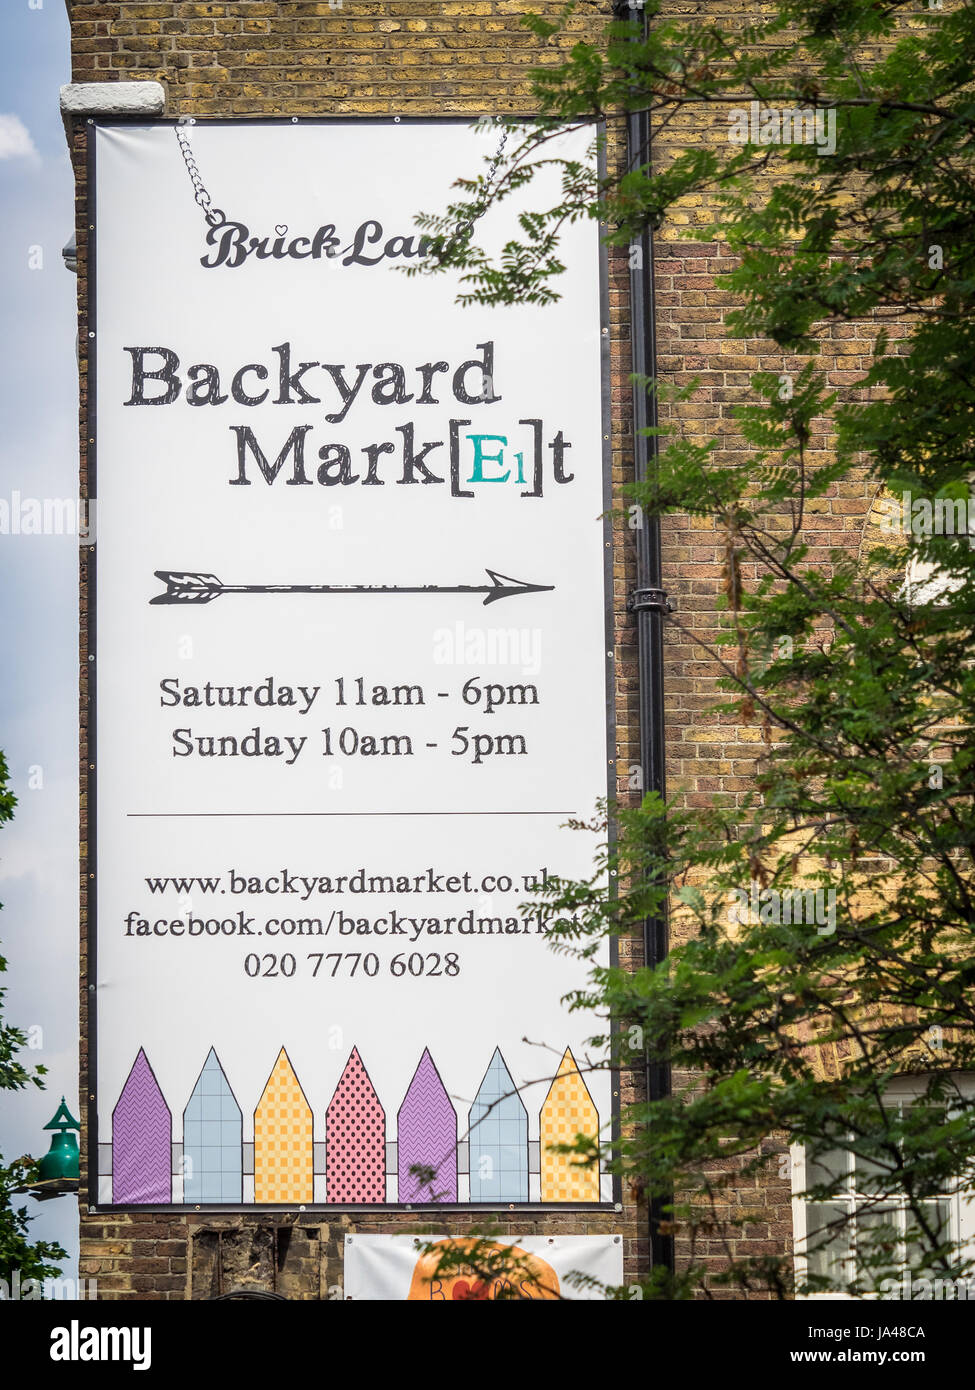 Inscrivez-vous à l'arrière-cour populaires du marché off London Brick Lane. Le marché est ouvert le week-end et très apprécié des touristes et des habitants. Banque D'Images